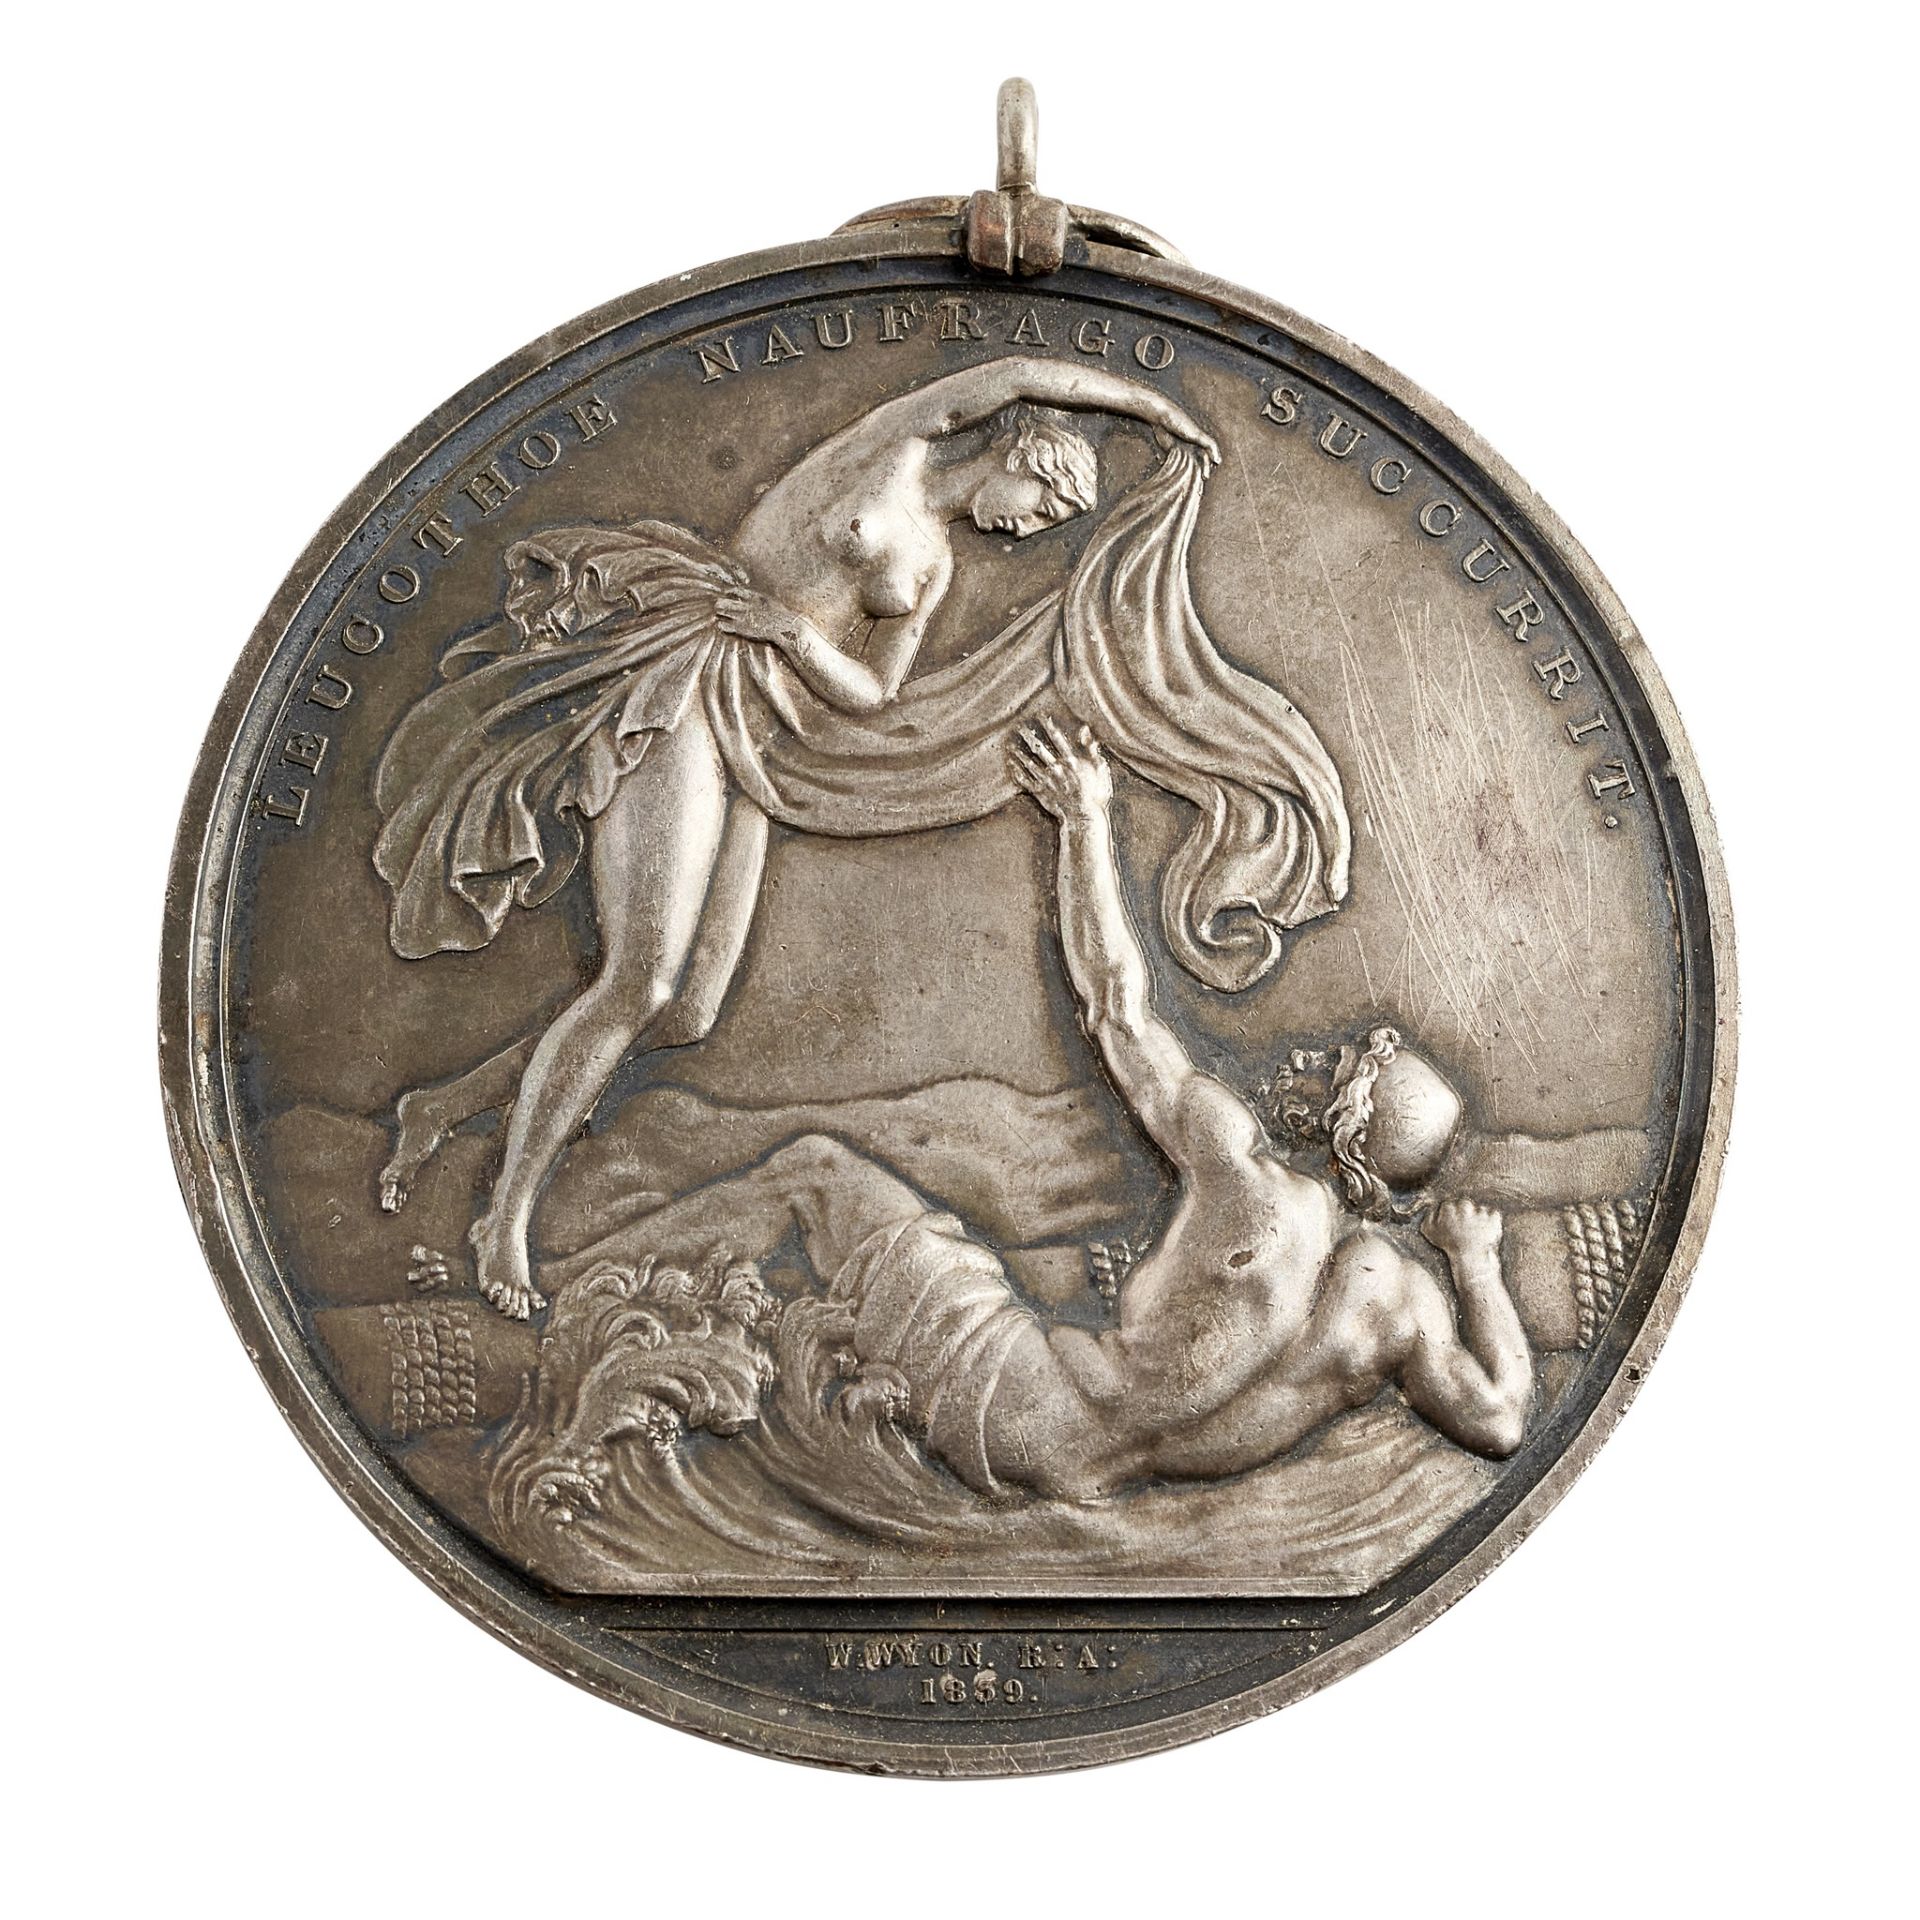 An 1839 Lloyds Medal